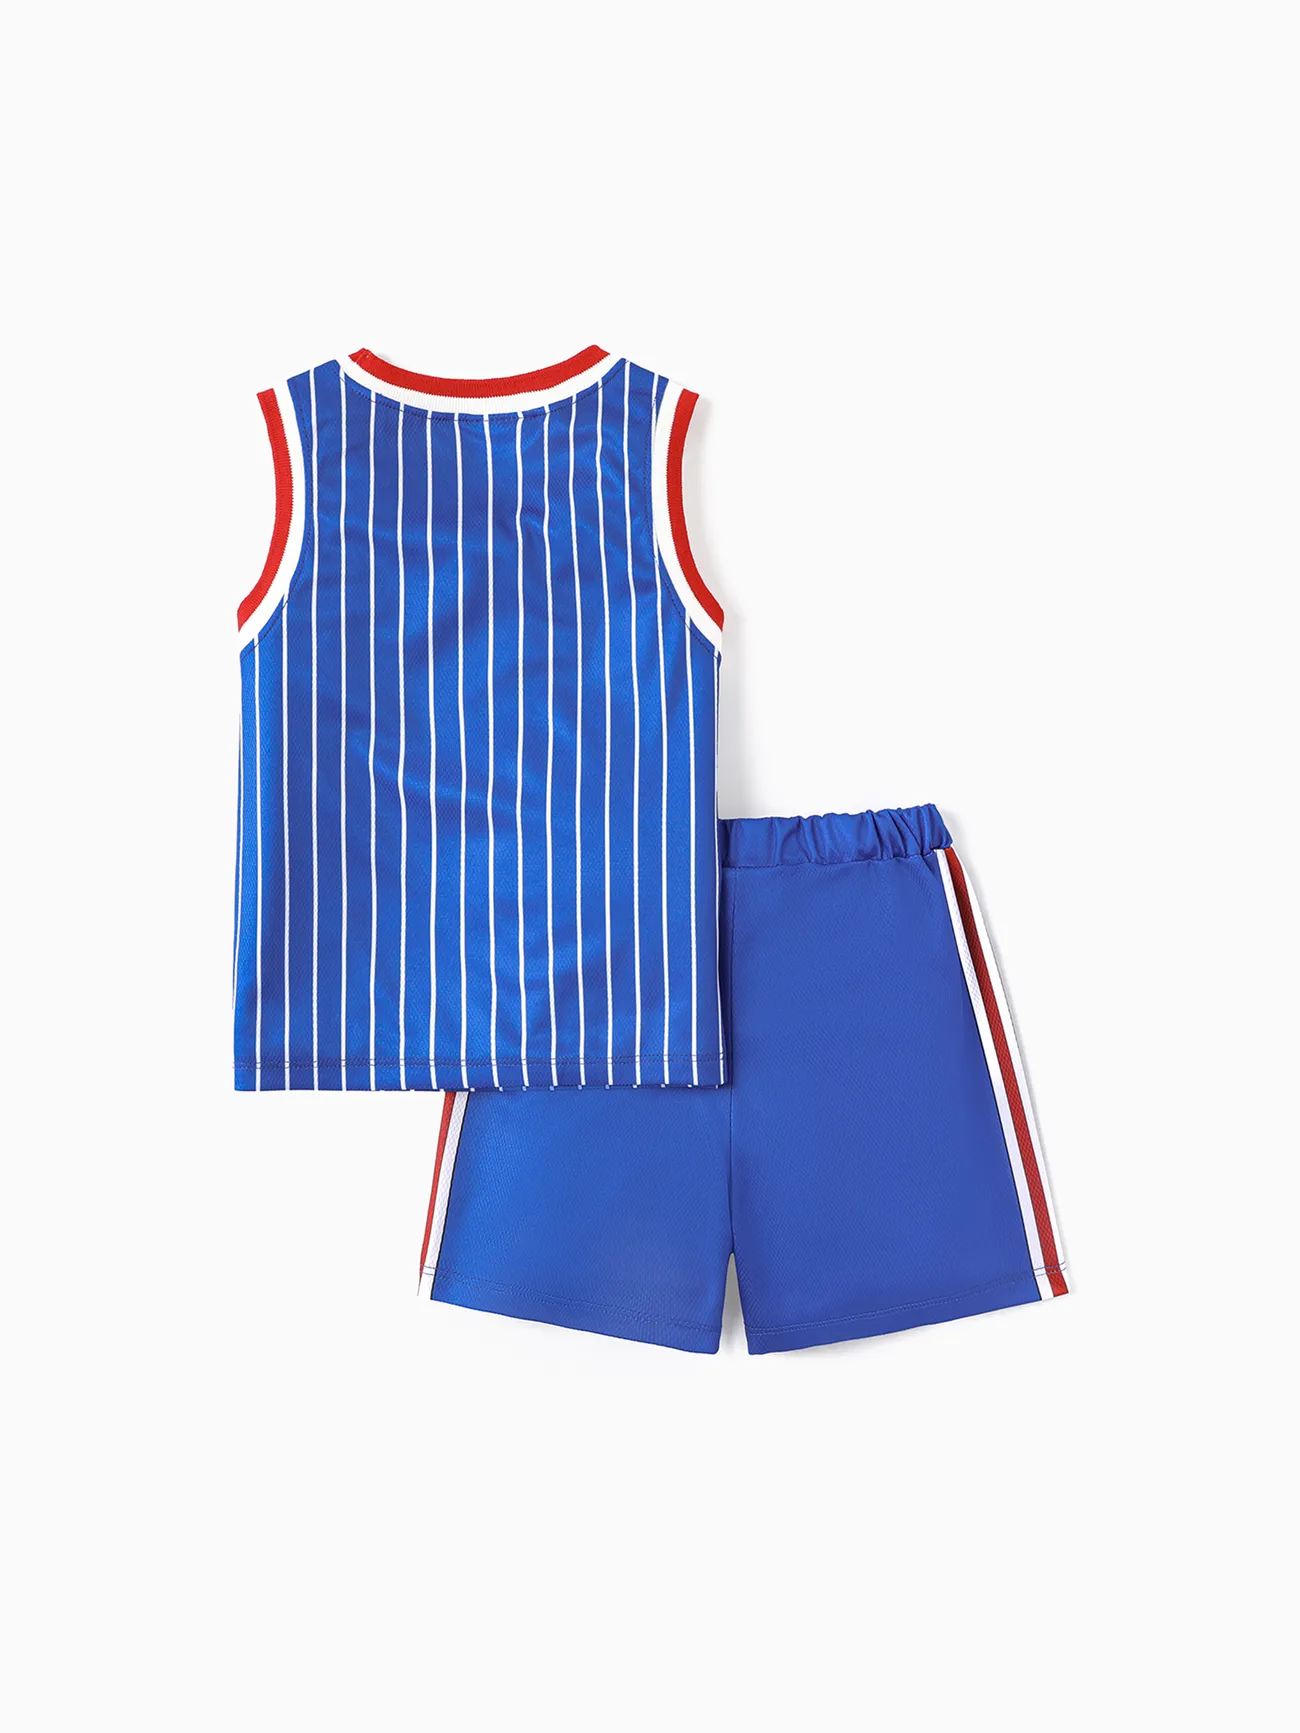 Looney Tunes Toddler/Kid Boy 2pcs Basketball & Character Print Tank Top and Shorts Set Blue big image 1